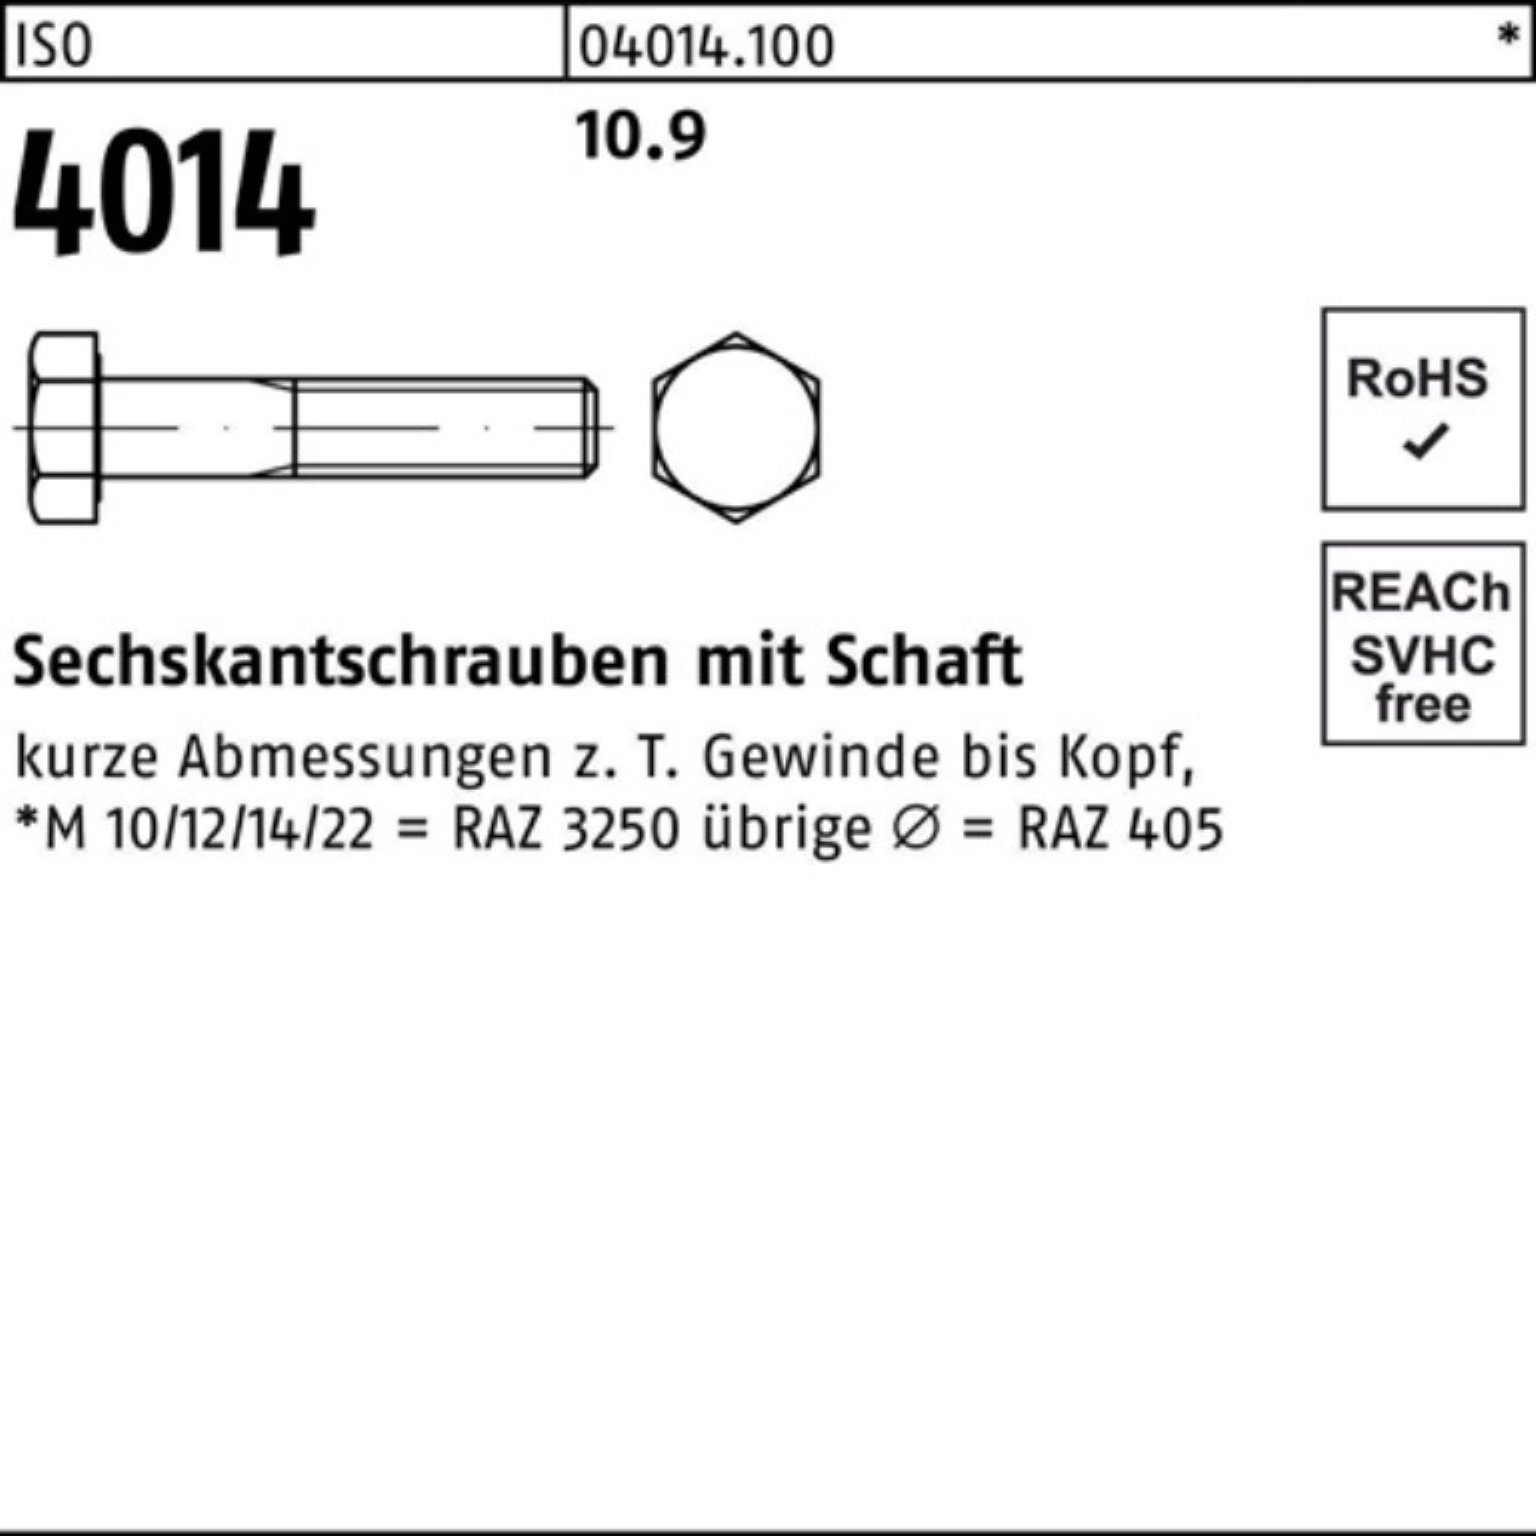 Pack 60 100er M10x ISO 100 Sechskantschraube Stück Sechskantschraube Schaft Bufab I 4014 10.9